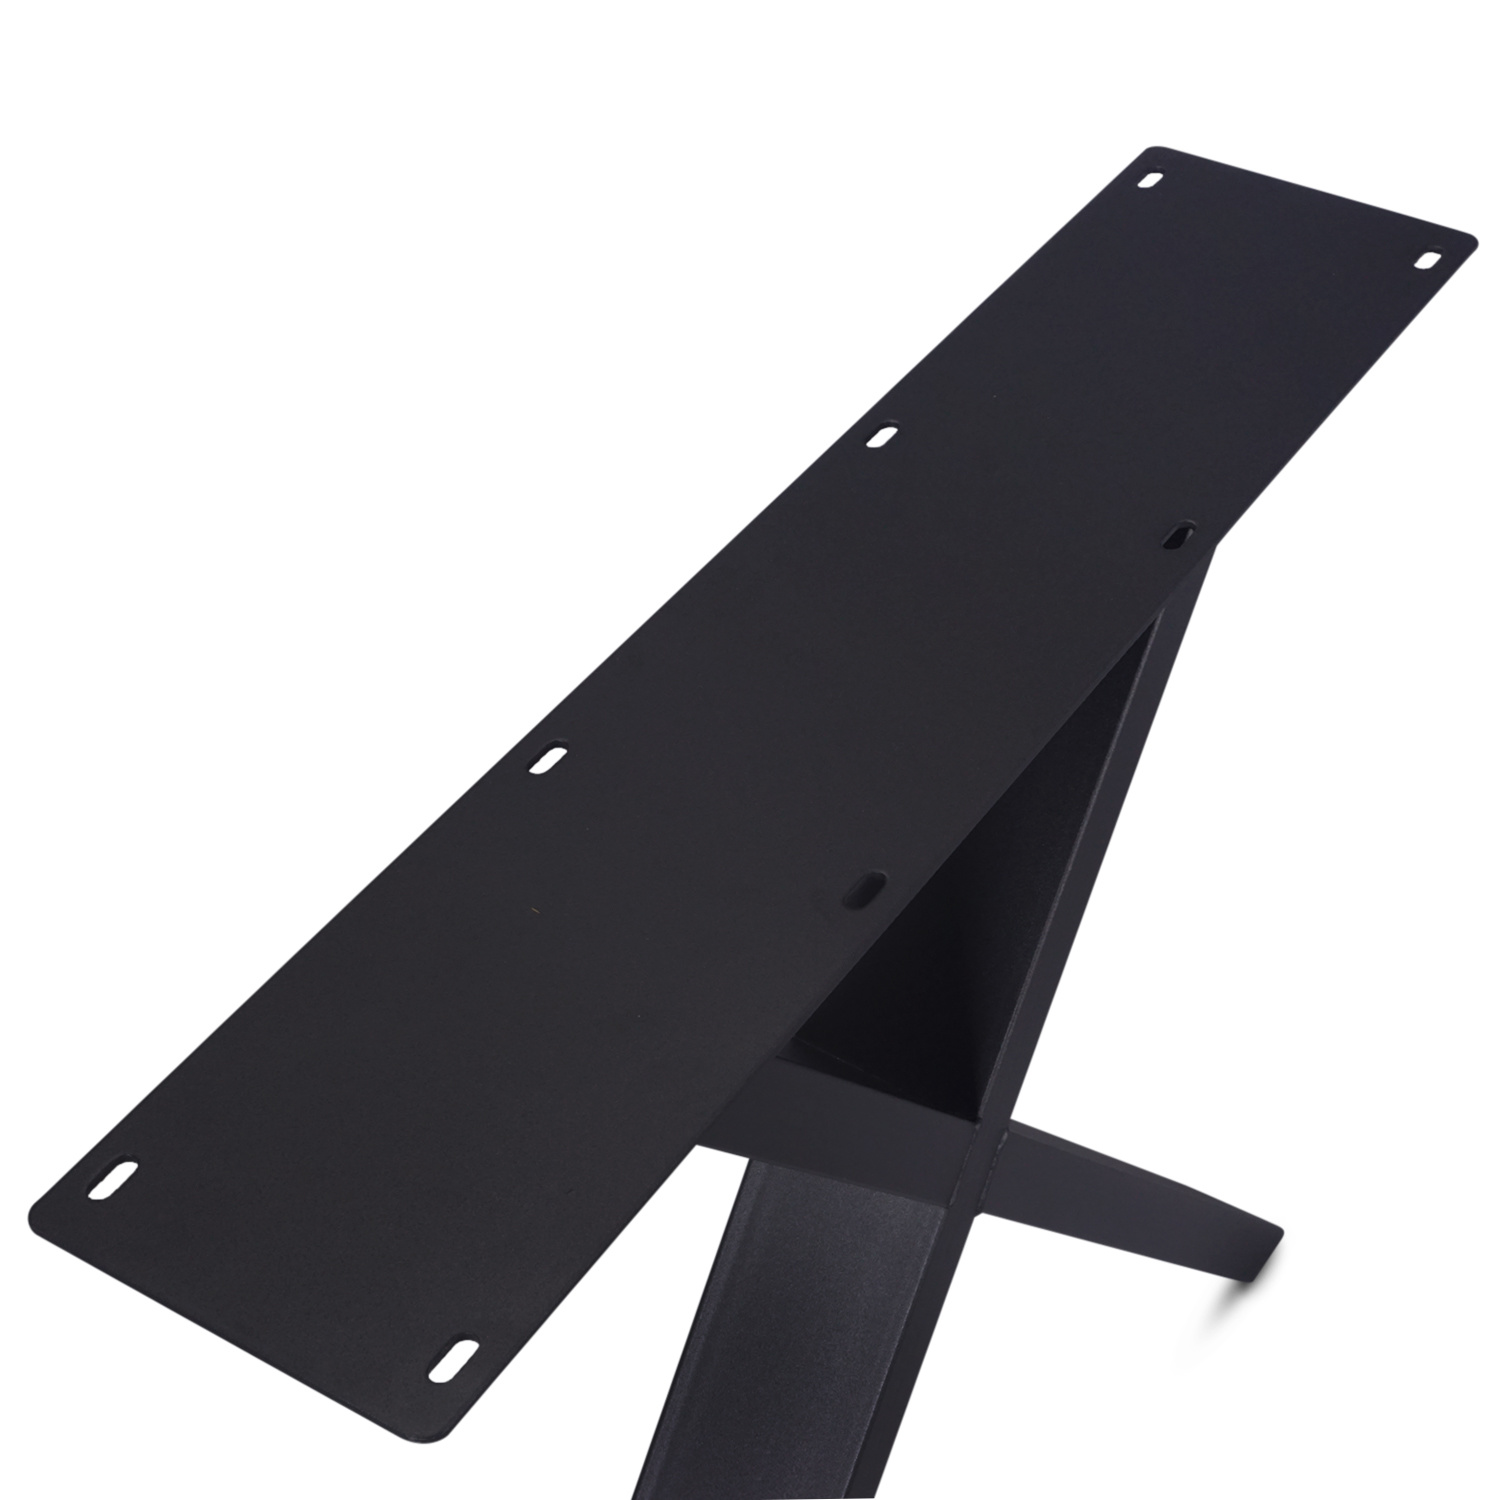  Stalen X-tafelpoten SCHUIN (SET) 5x15 cm - 84 cm breed - 72 cm hoog - Kruispoot met zwarte poedercoating